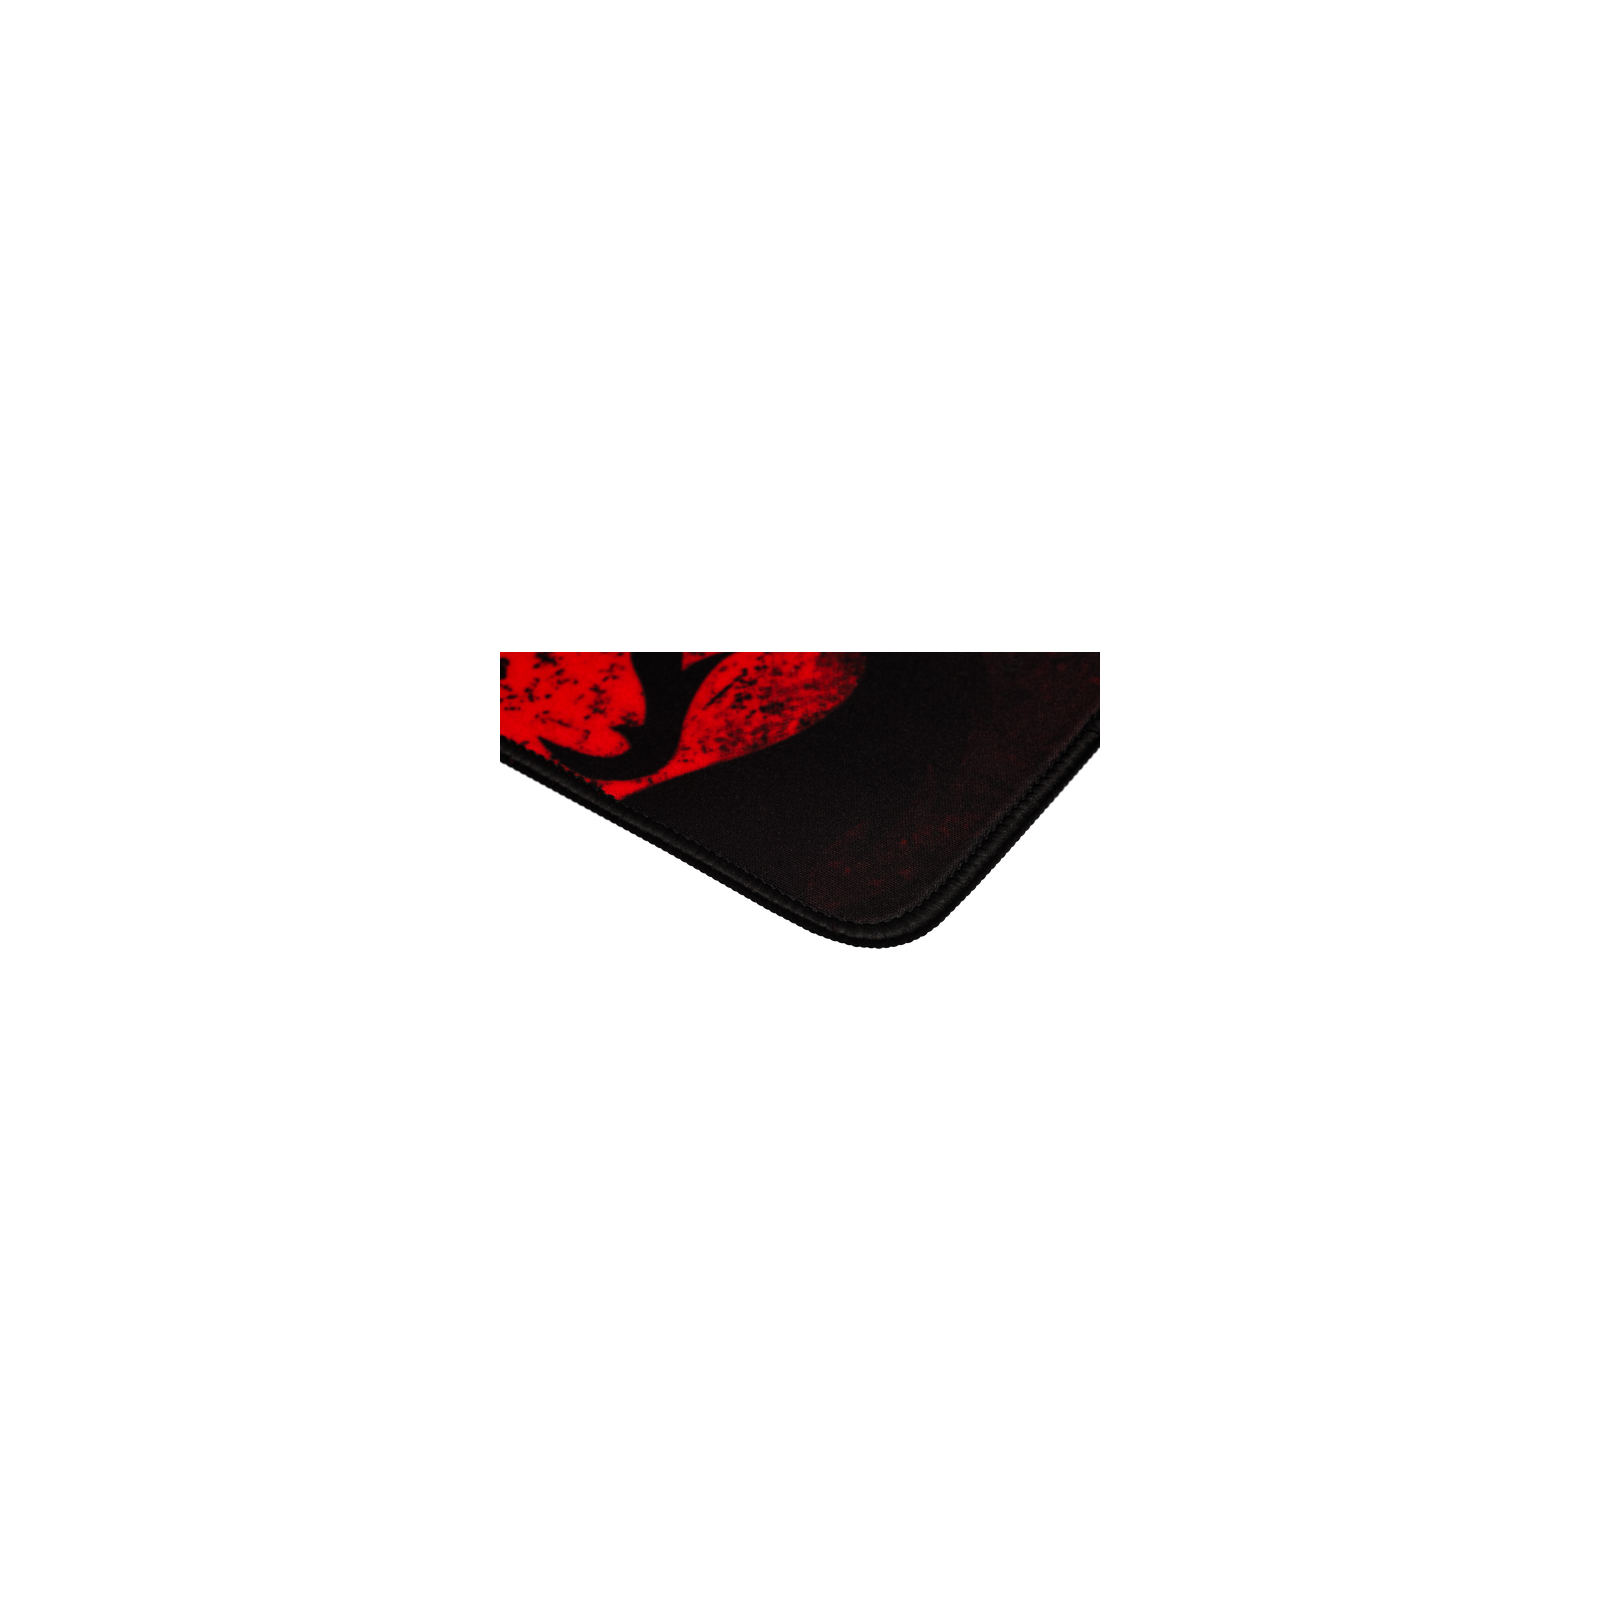 Мышка Redragon M601BA USB Black-Red + Килимок (78226) изображение 11